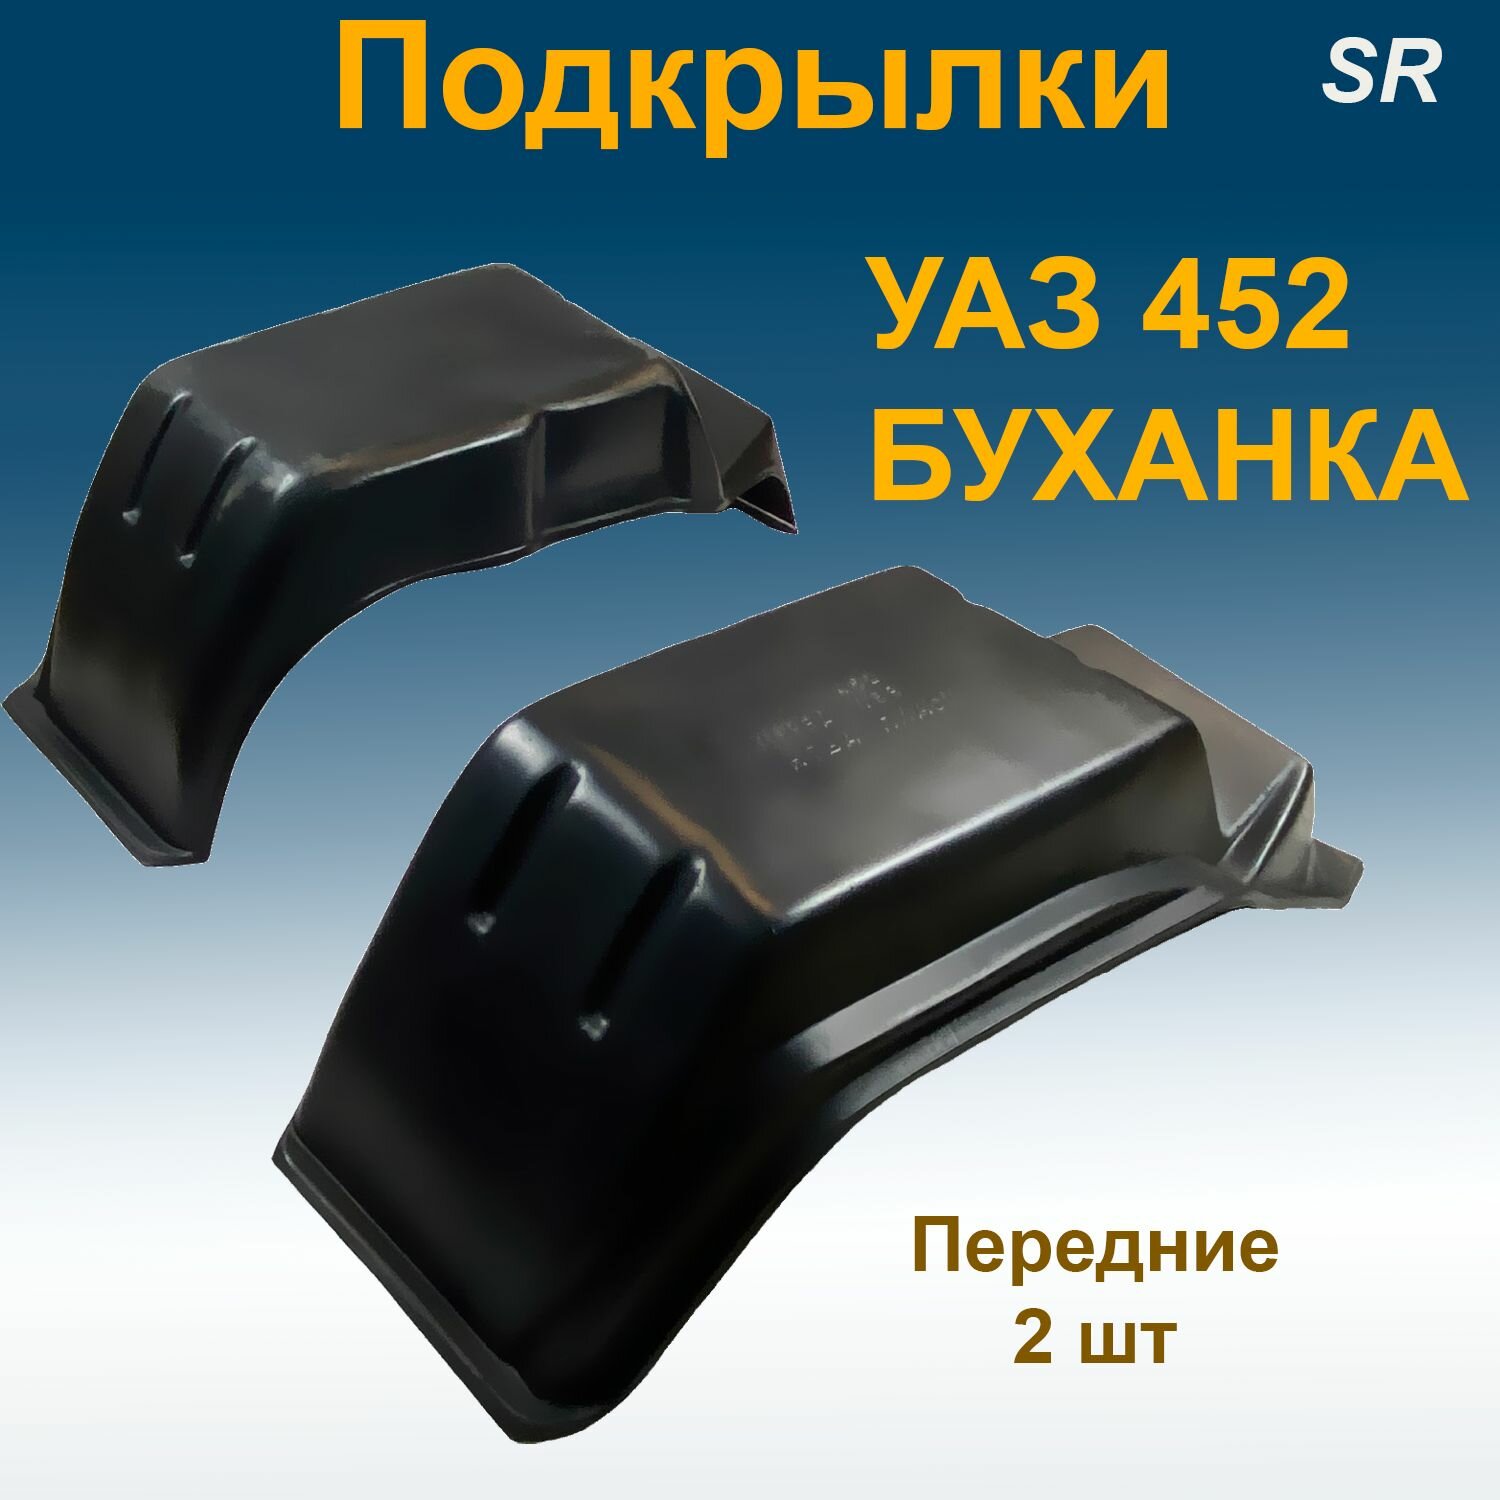 Подкрылки передние для УАЗ 452 буханка Star 2 шт